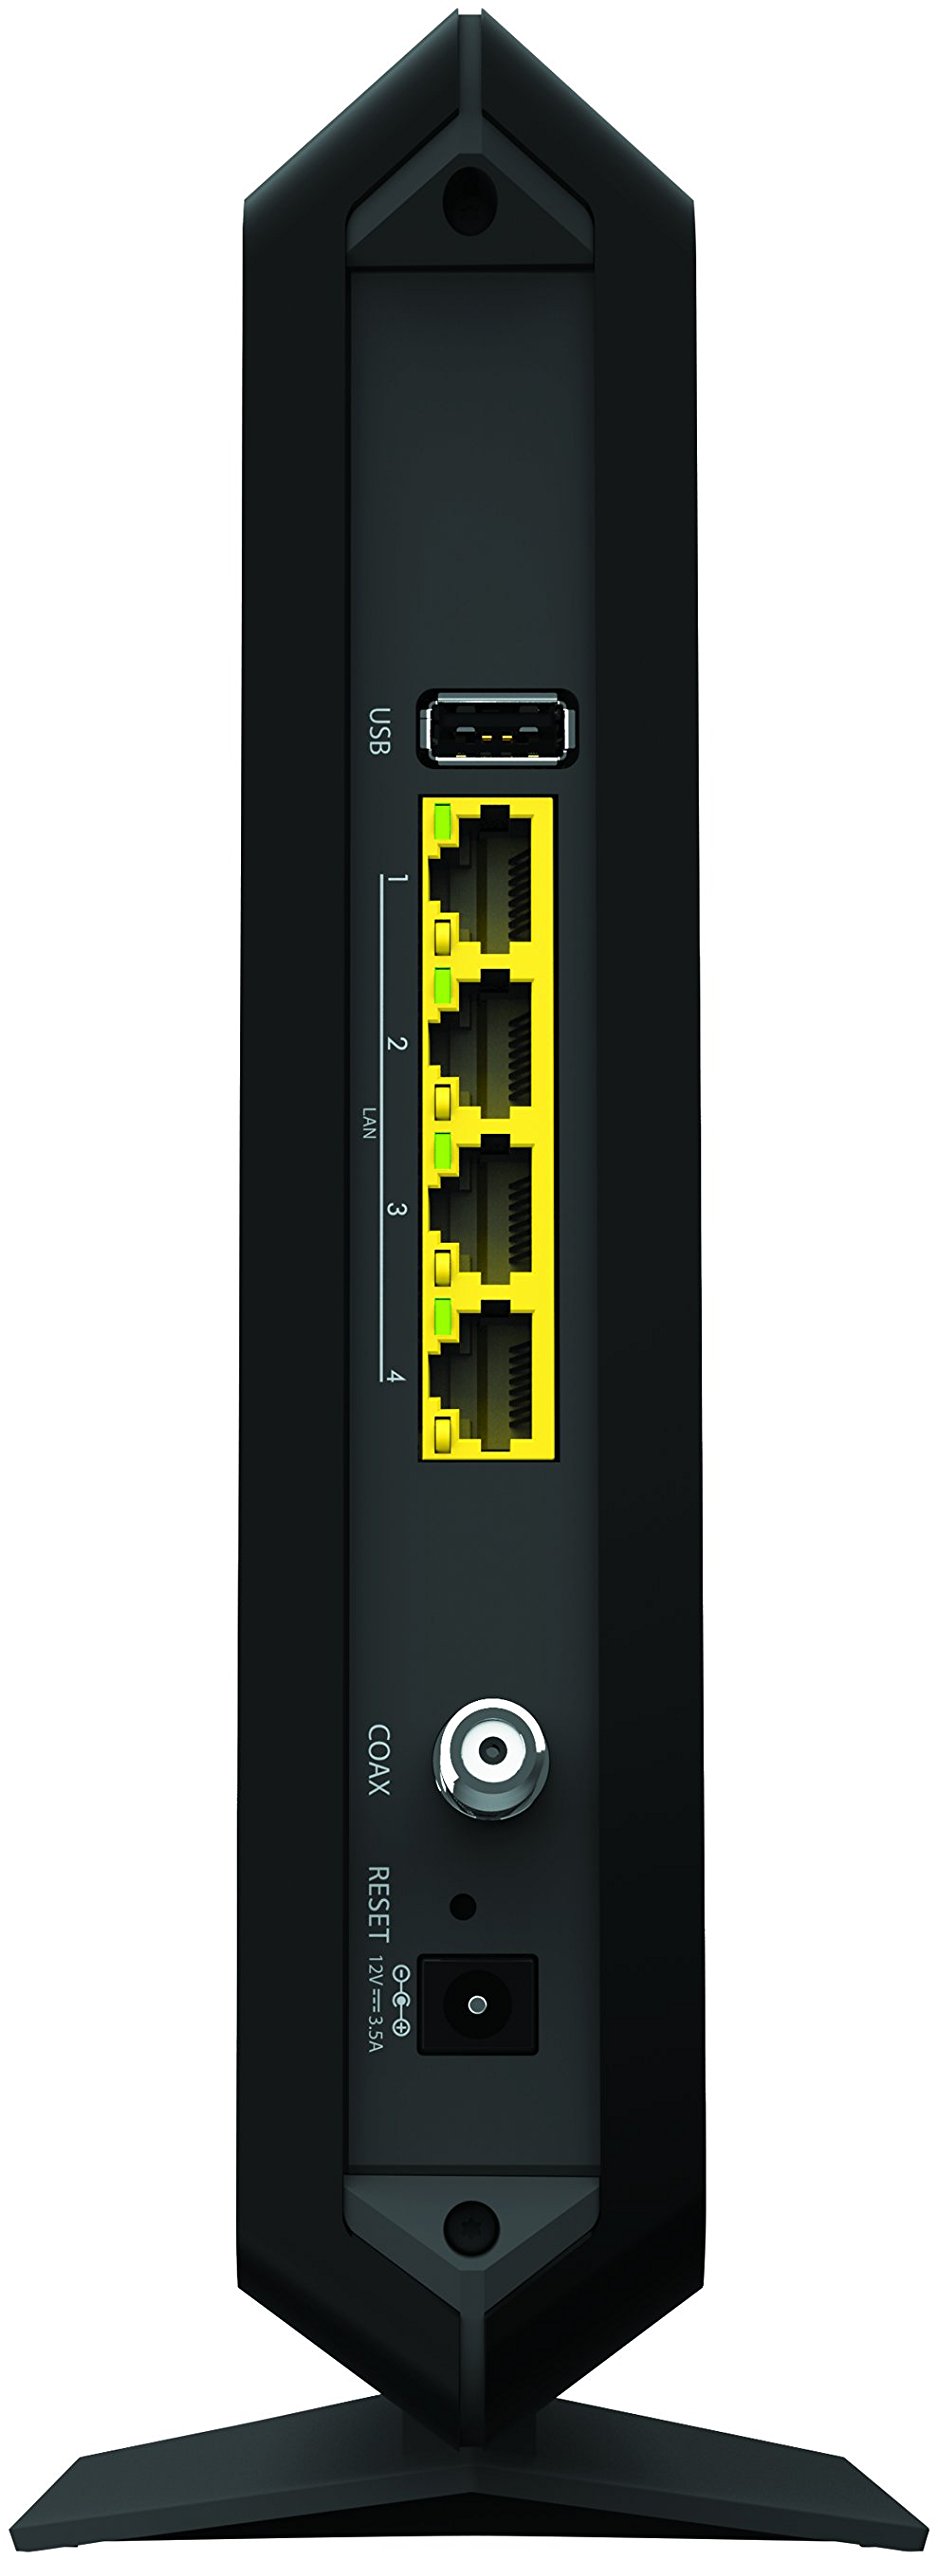 docsis 3.0 modem router combo